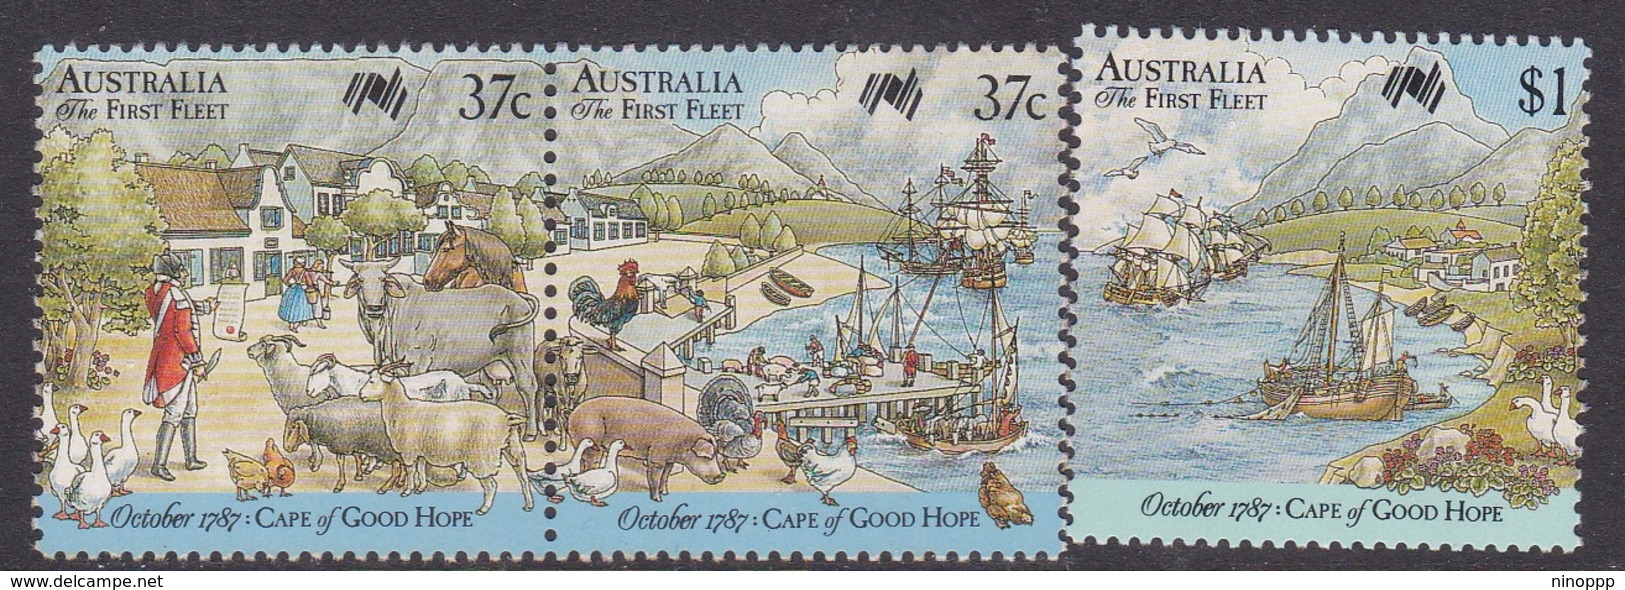 Australia ASC 1100-1102 1987 Australia Bicentennial IX First Fleet At Cape Of Good Hope, Mint Never Hinged - Ongebruikt